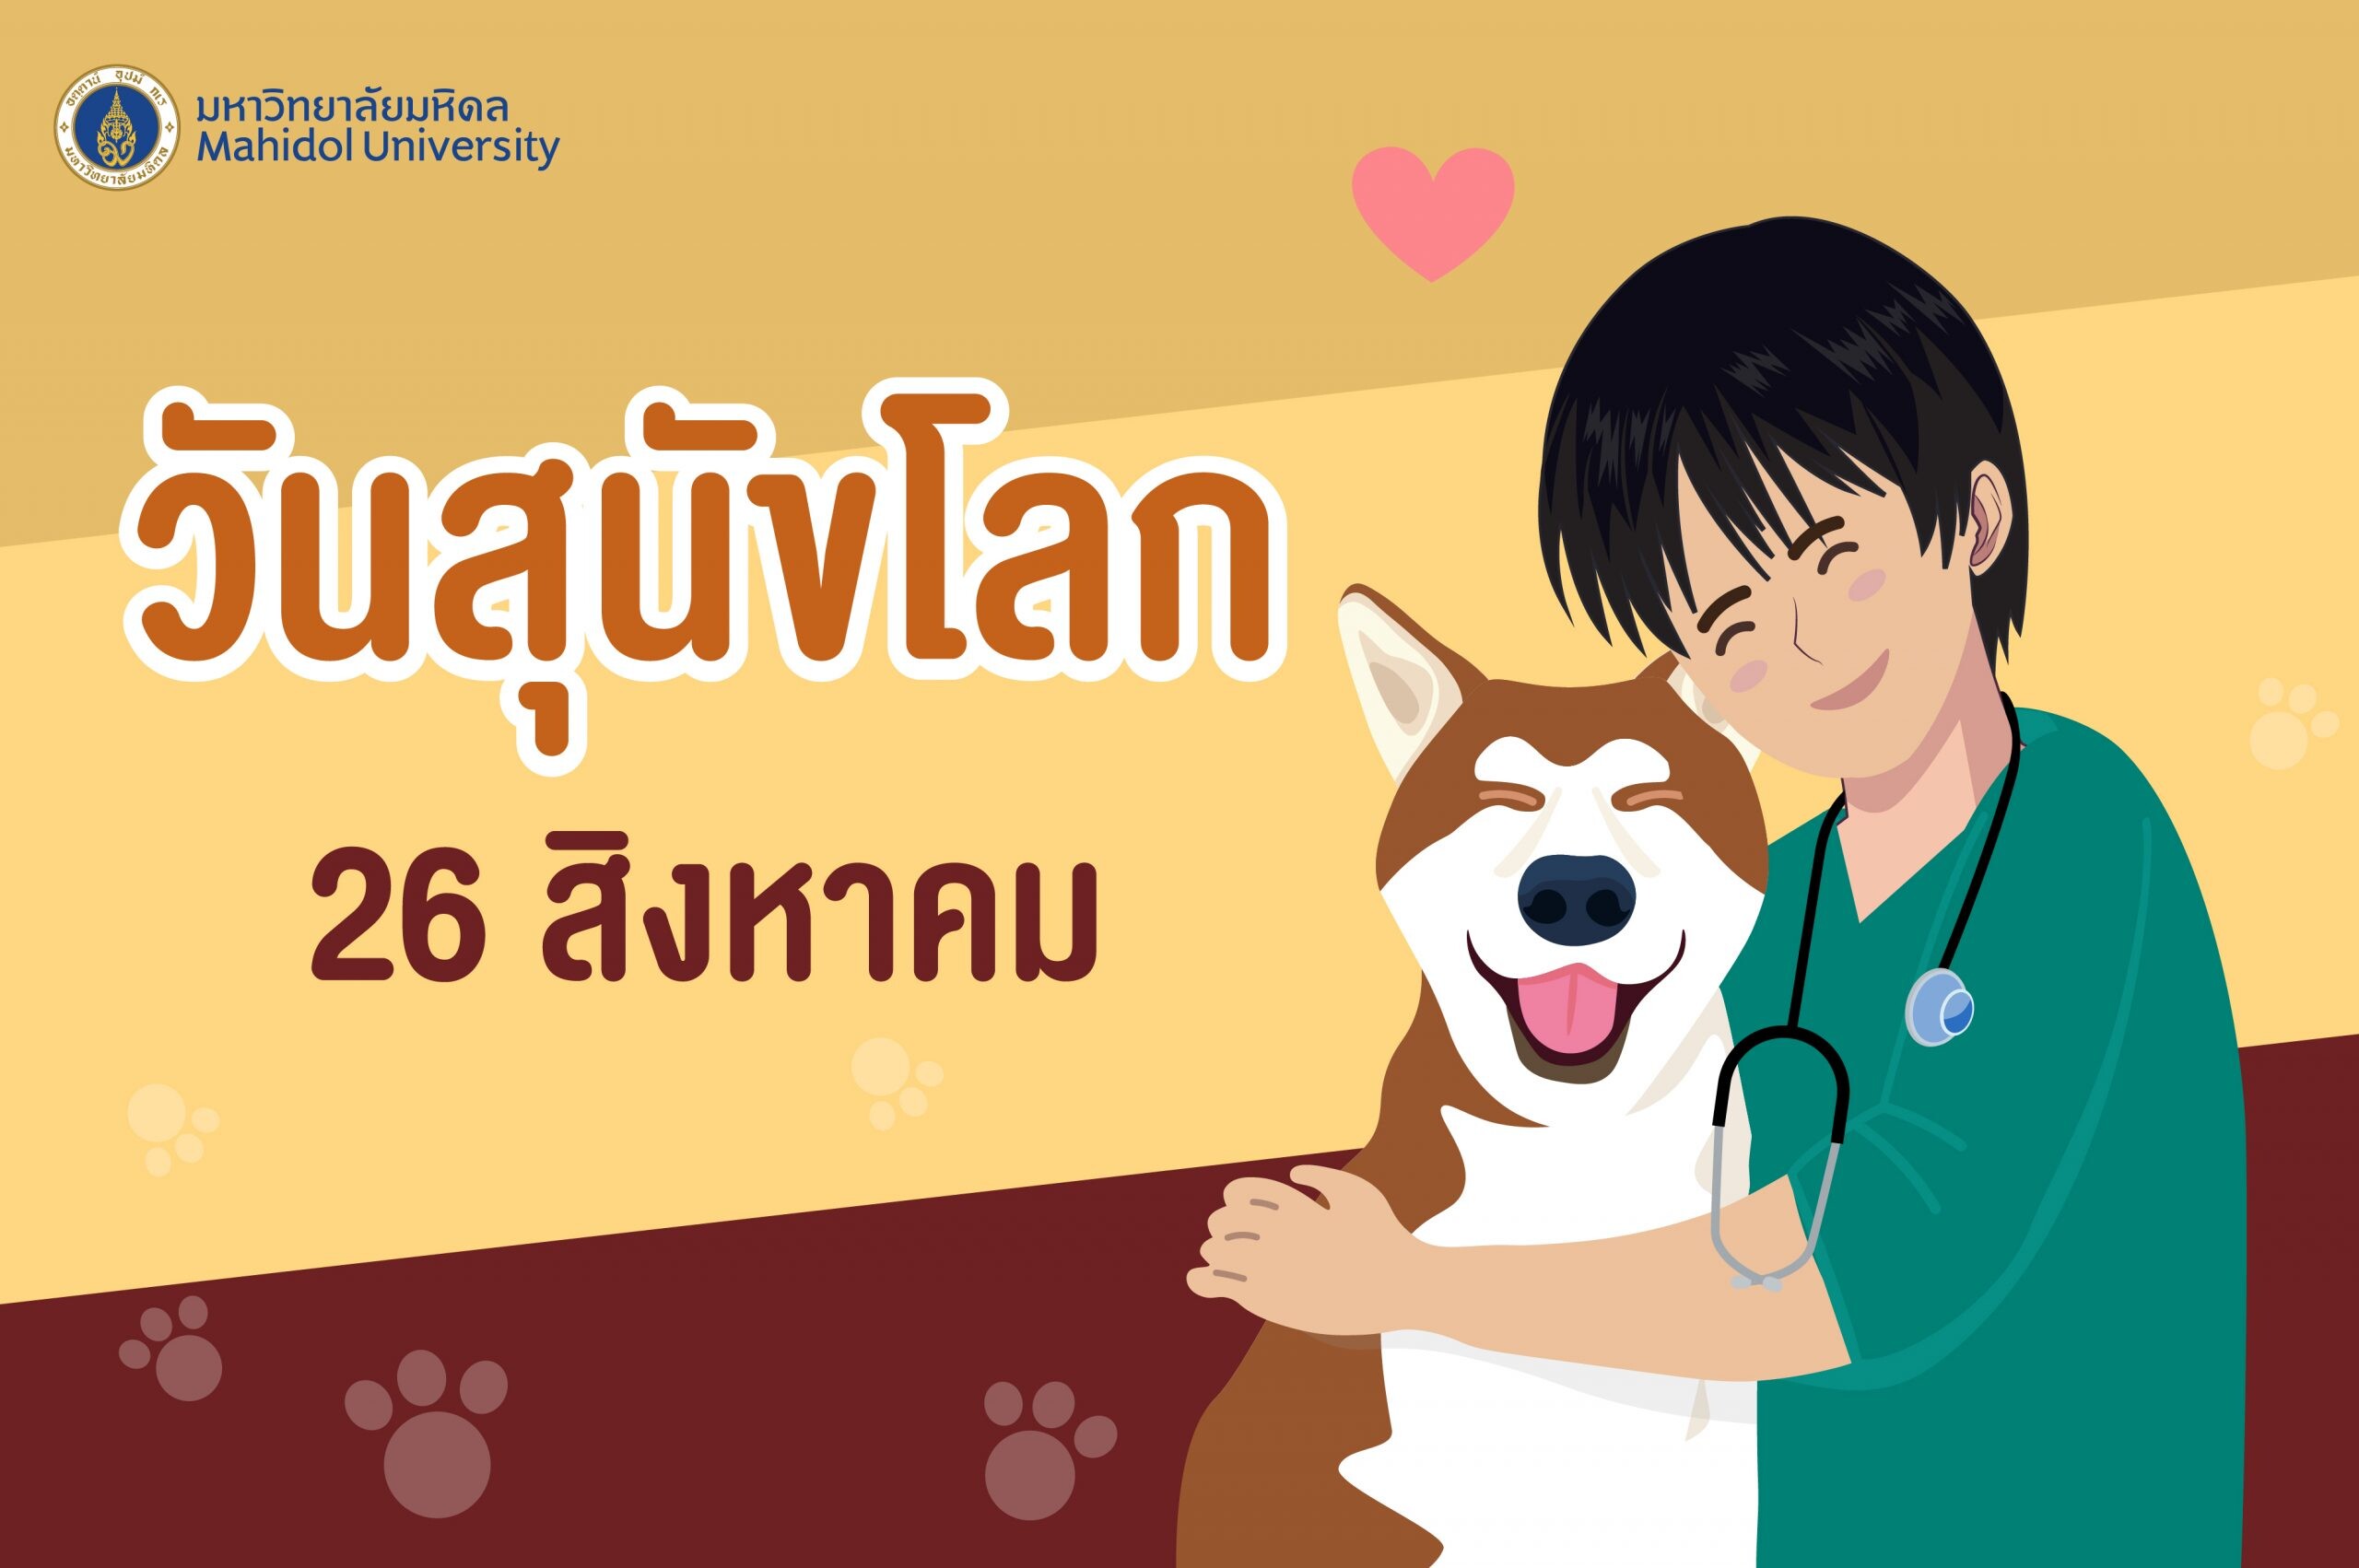 ม.มหิดล เผยผลวิจัยโครงการแบบจำลองการระบาดและการควบคุมโรคพิษสุนัขบ้าในสุนัขประเทศไทย หวังสร้างระบบติดตามประชากรสุนัขเพื่อการป้องกันที่ยั่งยืนในระดับประเทศ